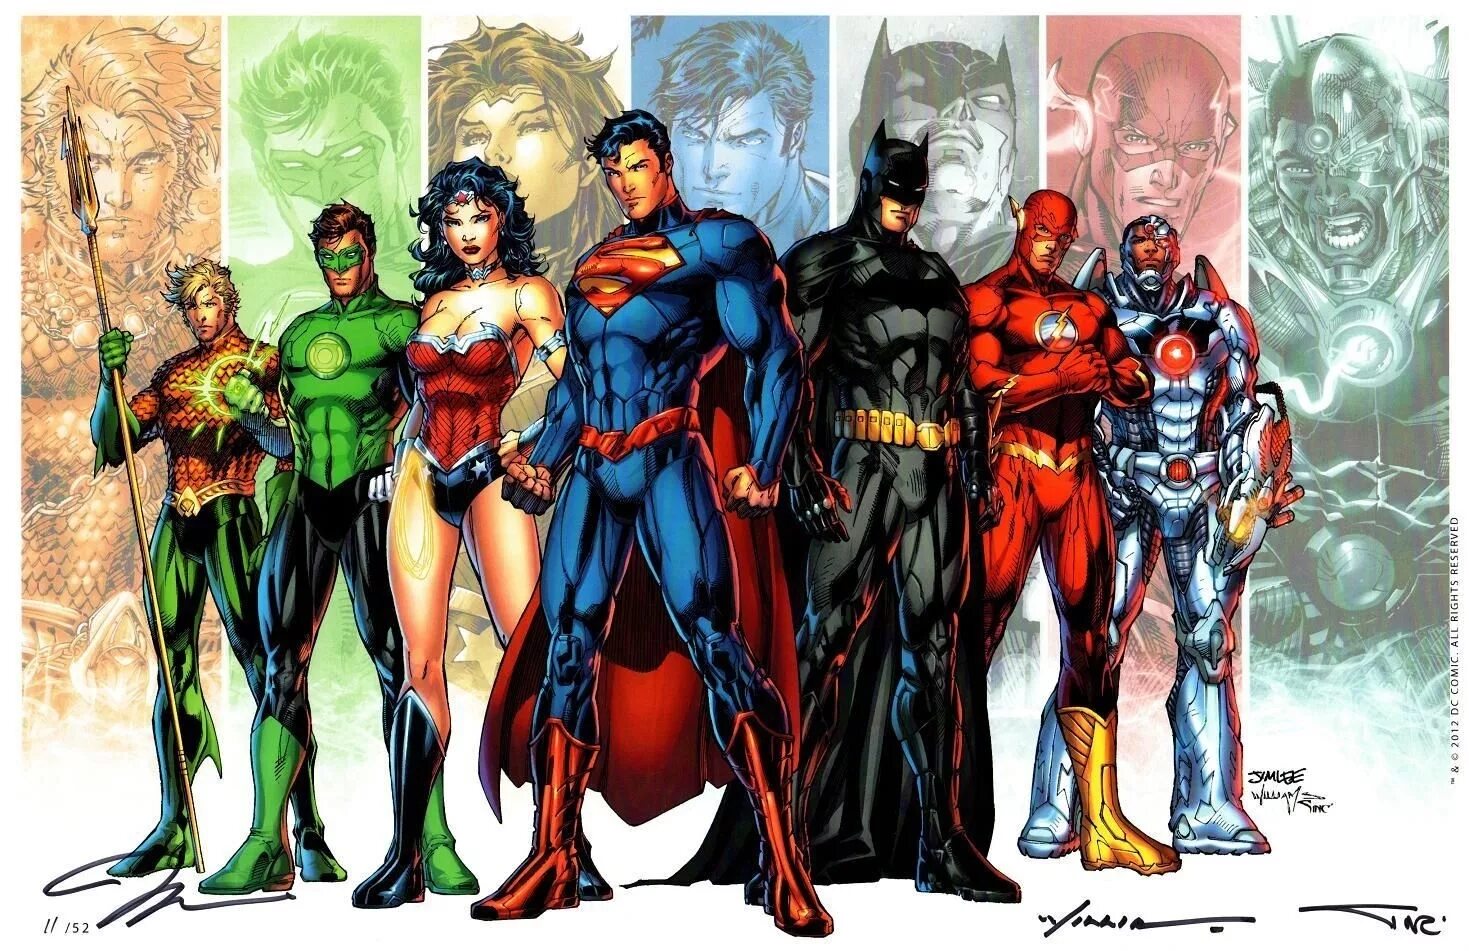 More justice. DC Вселенная New 52. Вселенная ДИСИ герои. Лига справедливости Нью 52 комикс. Супергерои Вселенная DC.